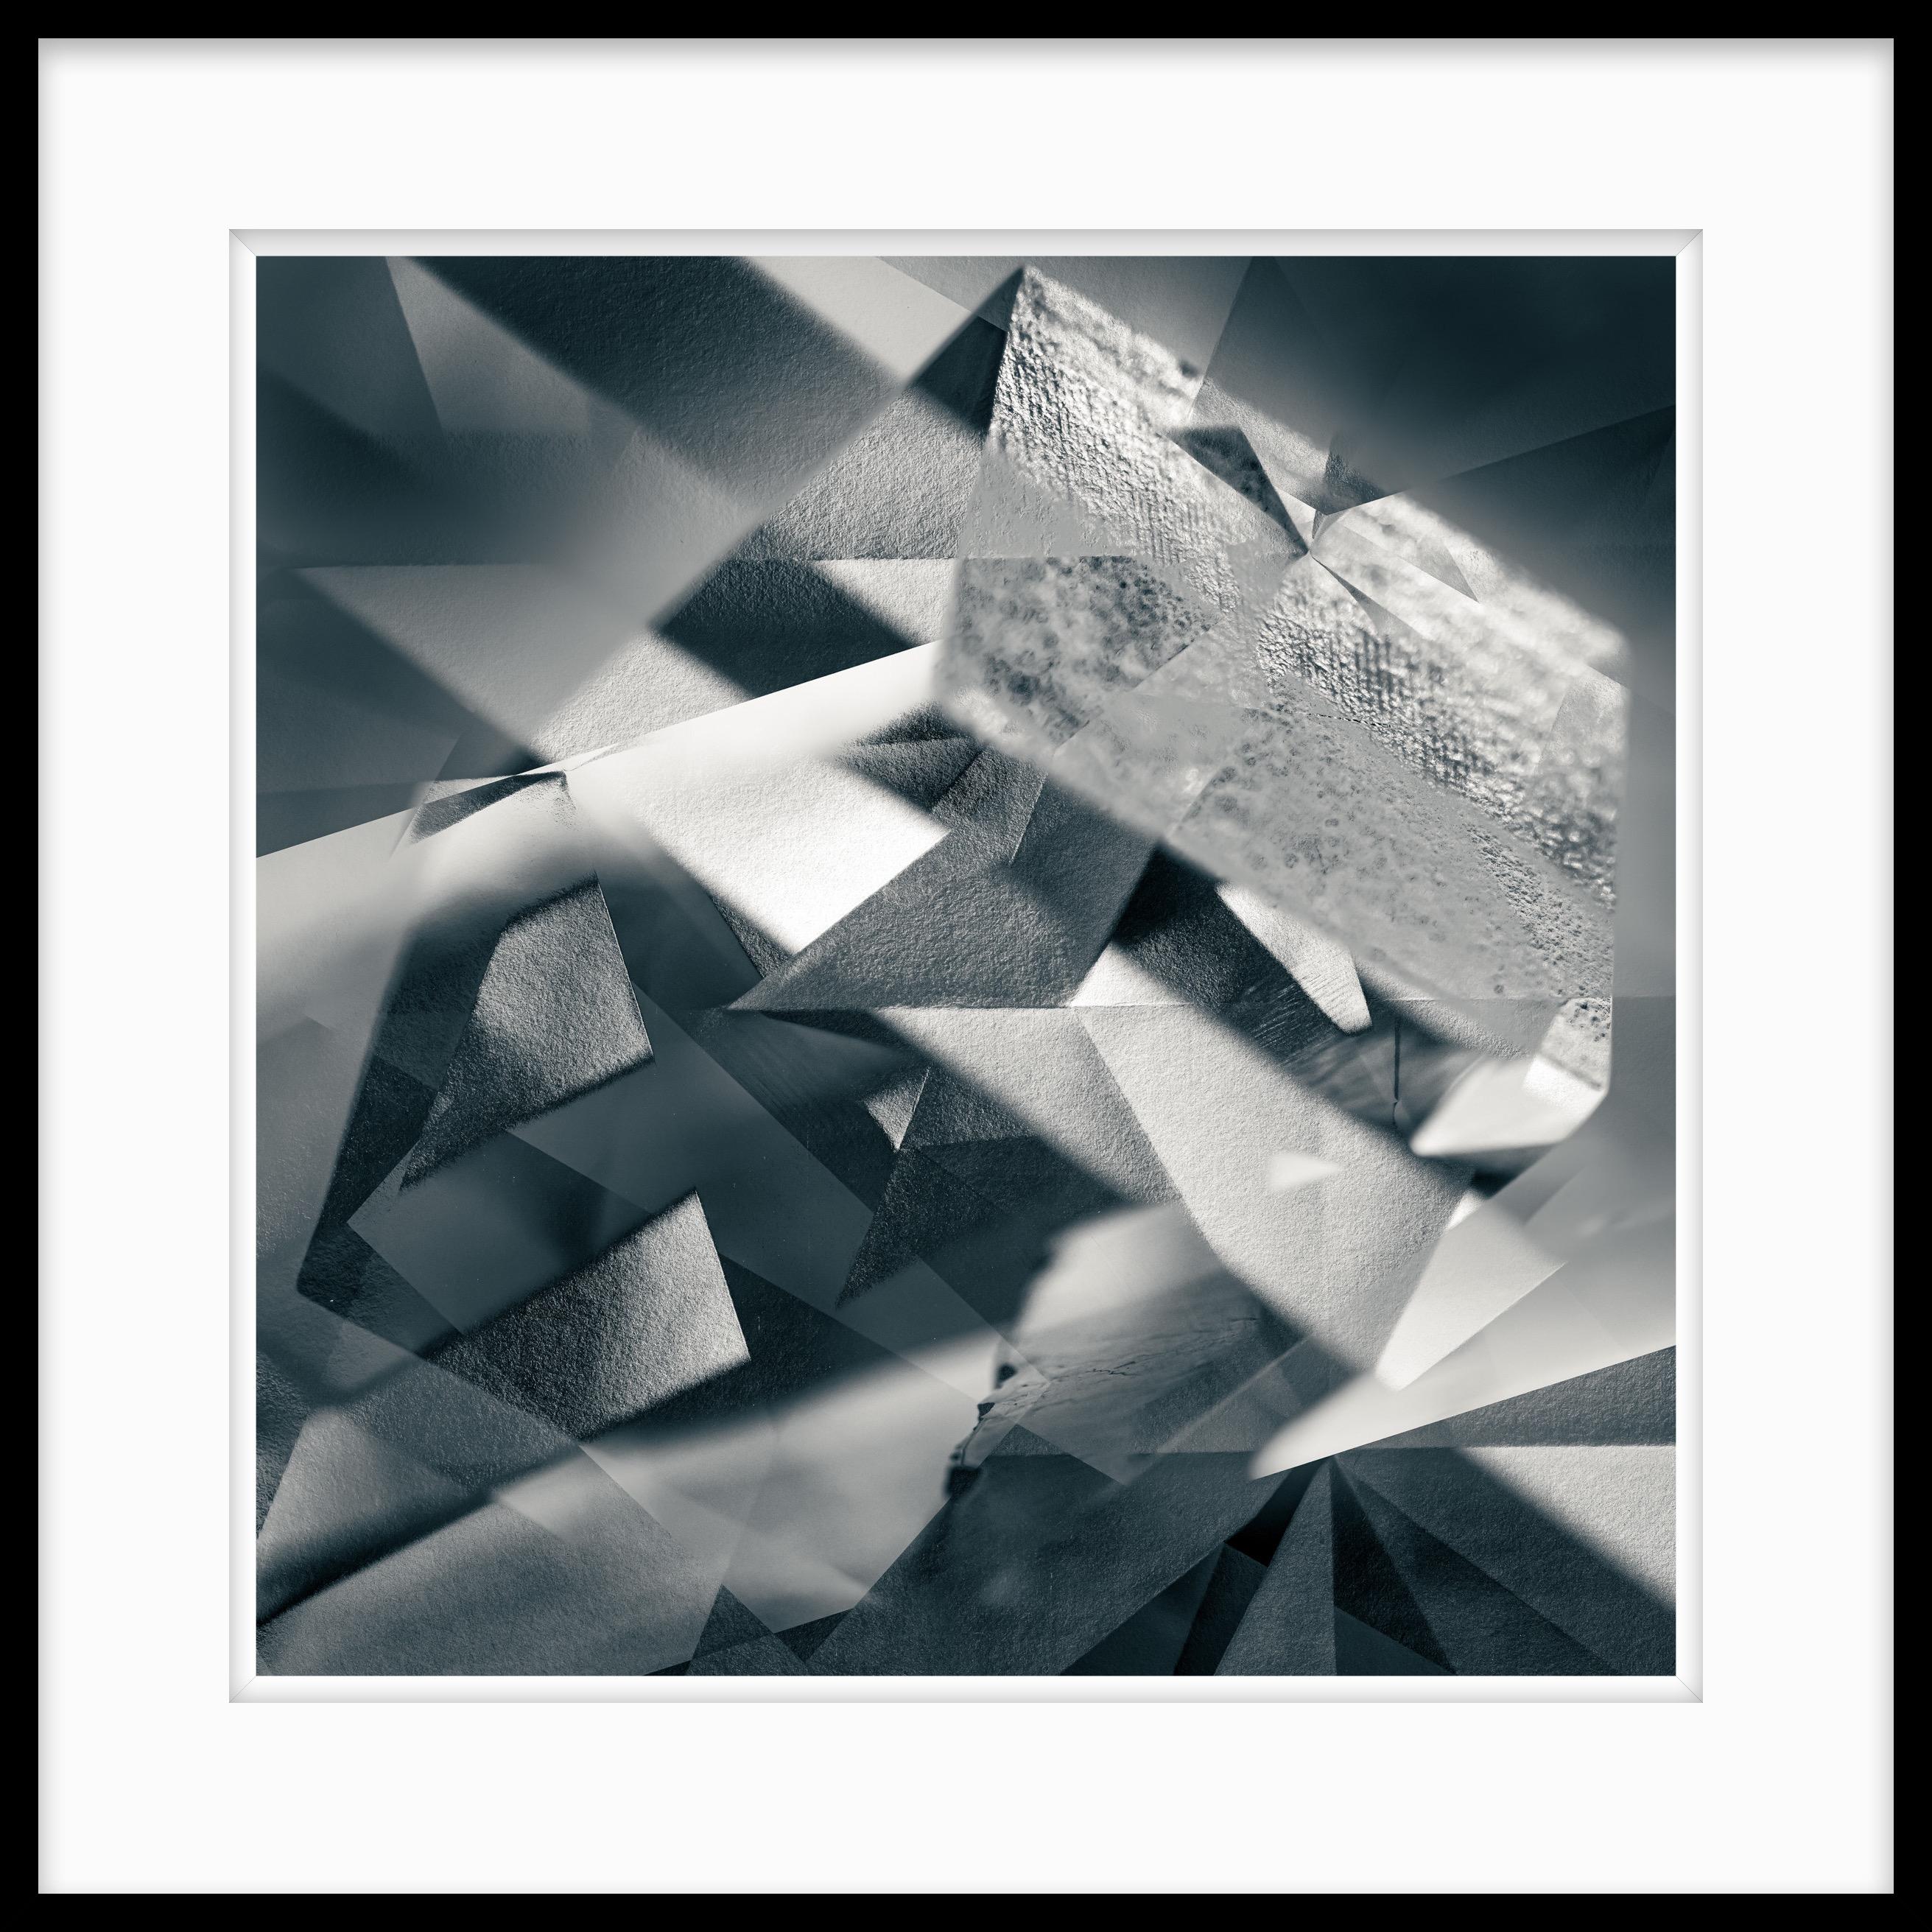  Abstrakte Schwarz-Weiß-Fotografie in limitierter Auflage „Würfelkreation“, 2020 – Photograph von Howard Lewis